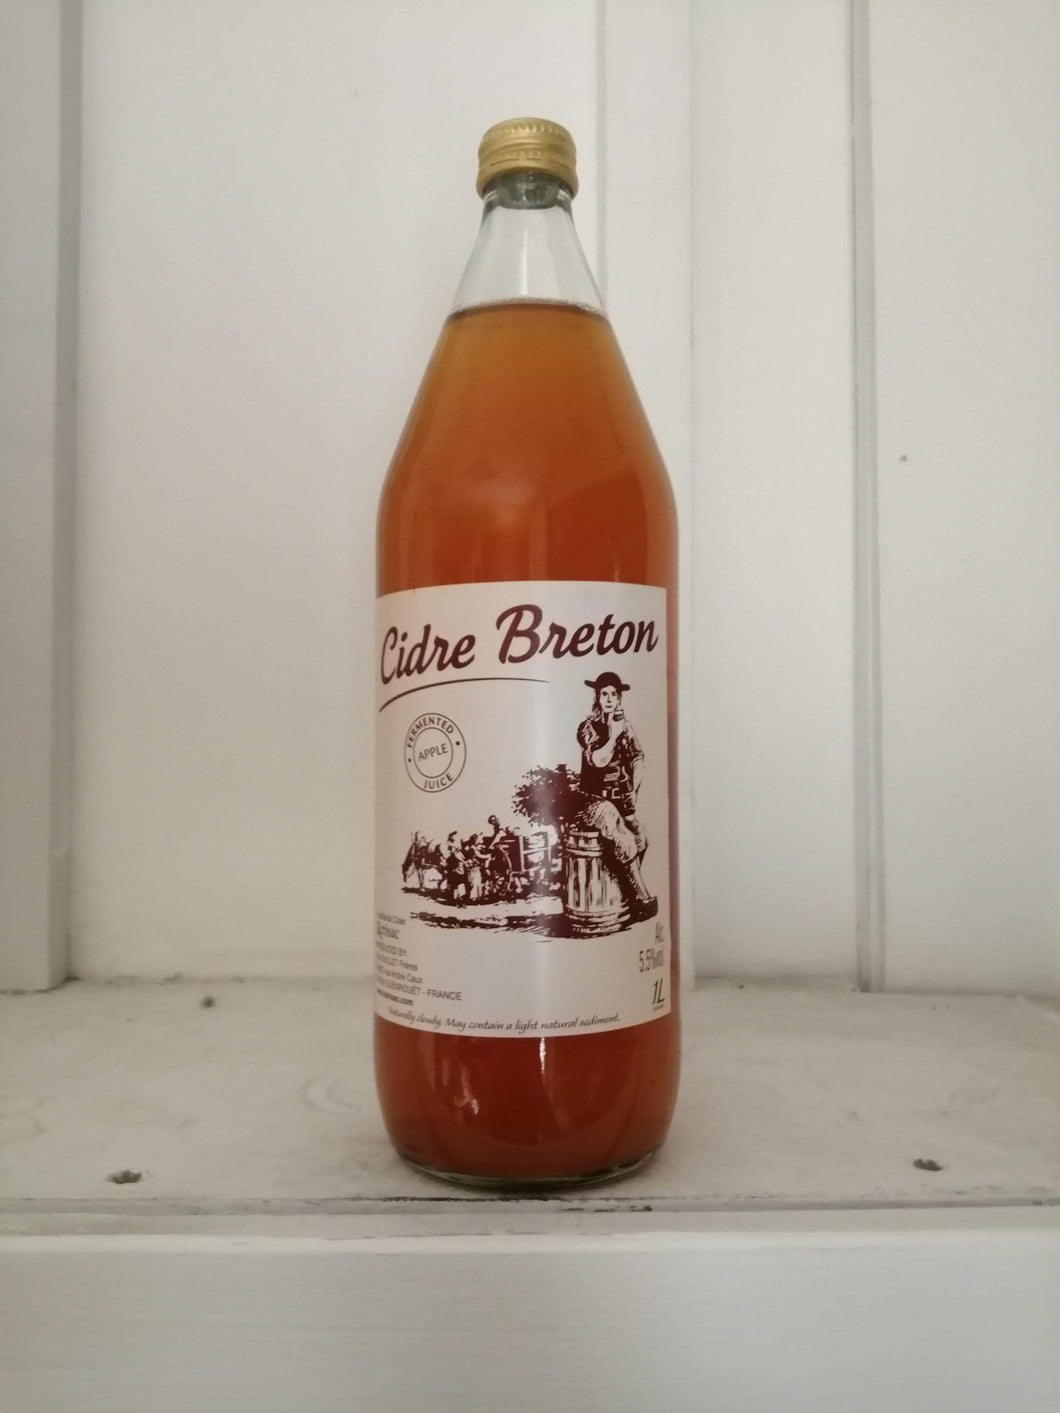 Kerisac Cidre Breton 5.5% (1 litre bottle)